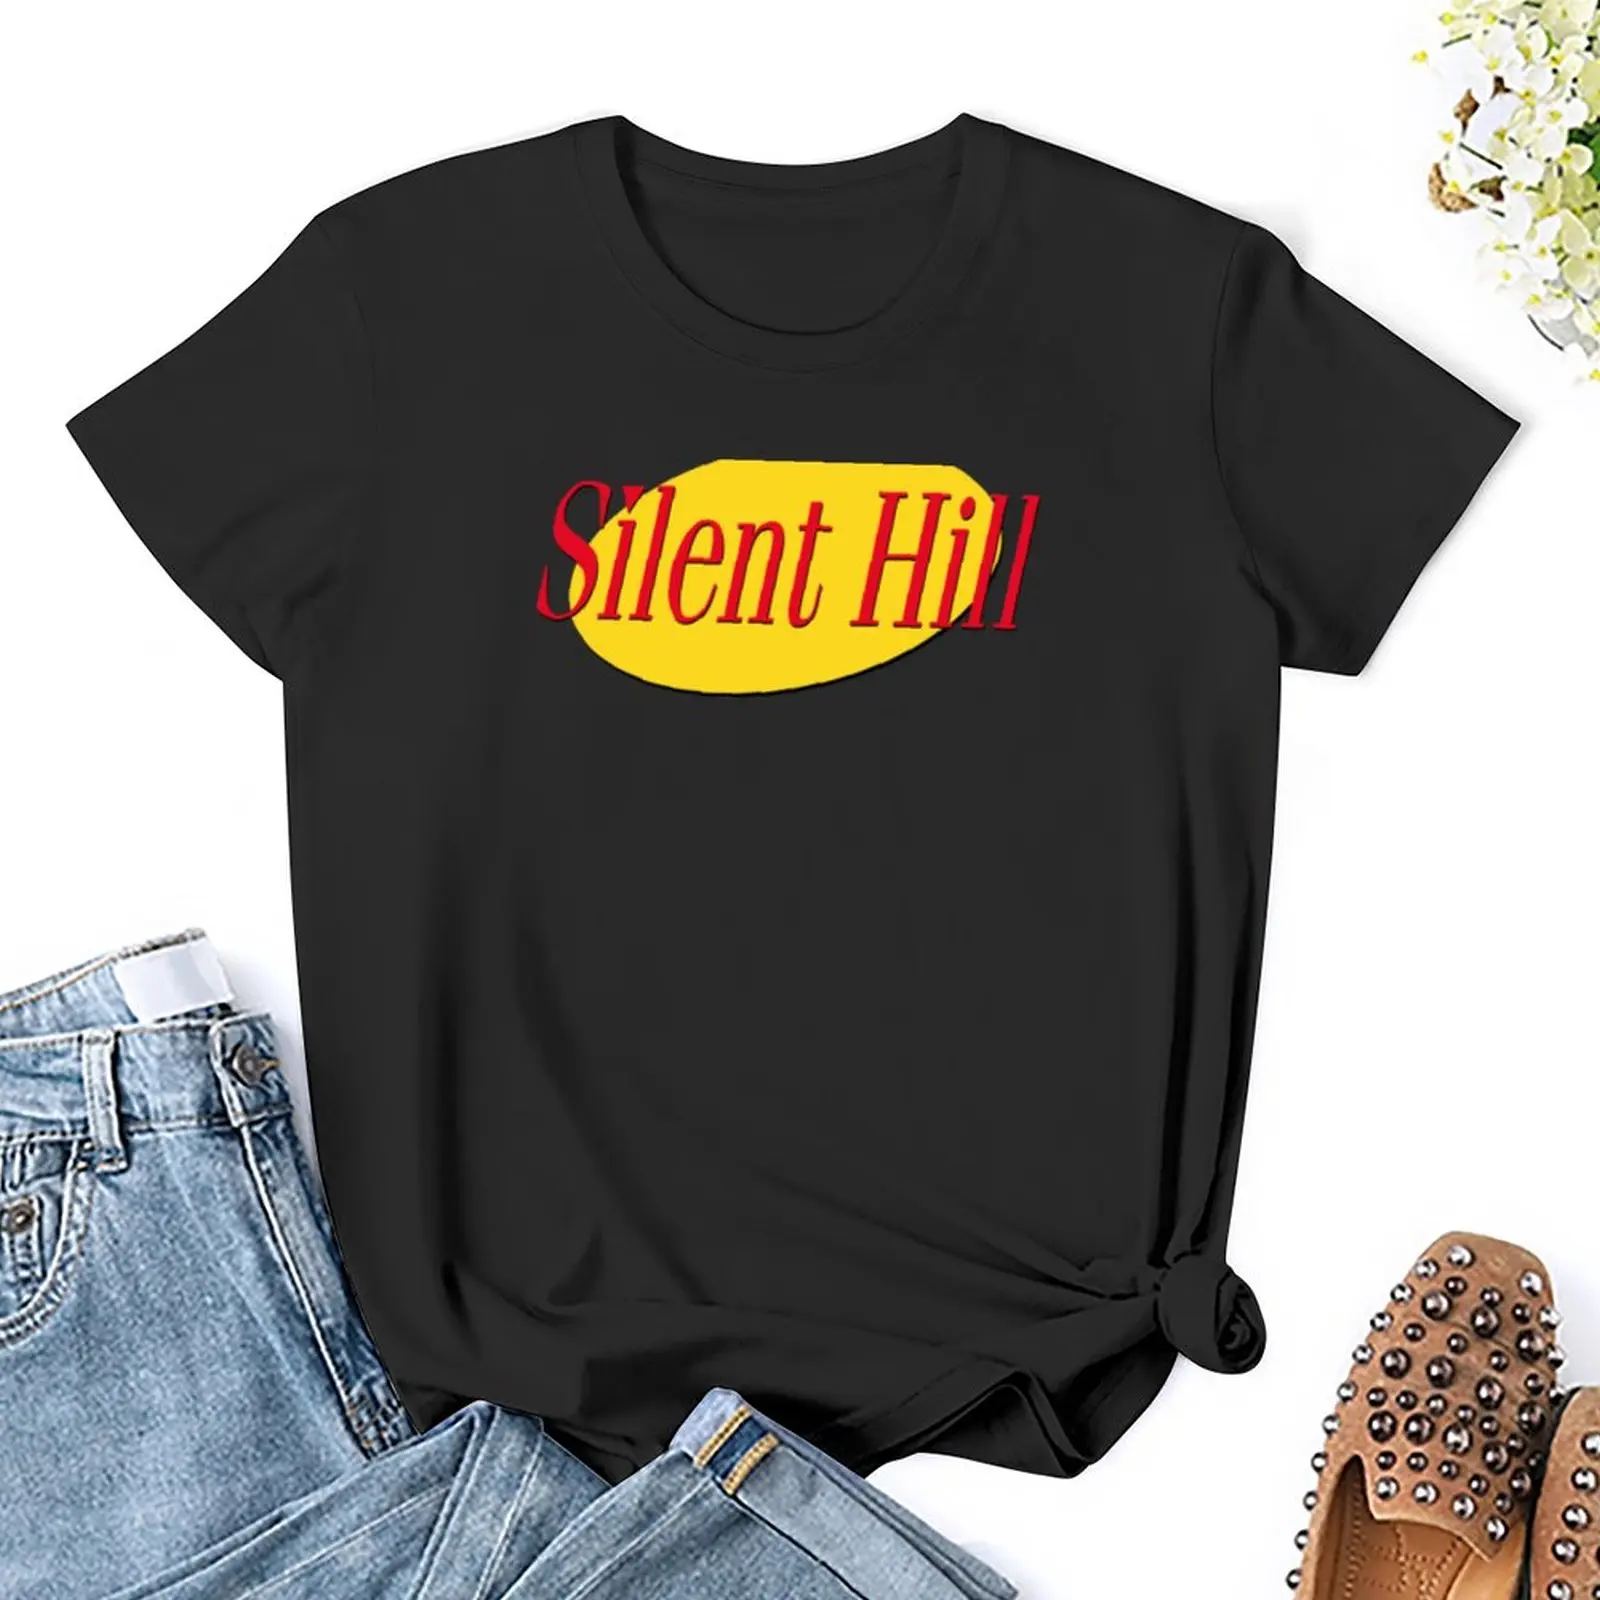 Футболка Silent Hill, корейская модная летняя одежда, футболки с графическим рисунком, тренировочные рубашки для женщин